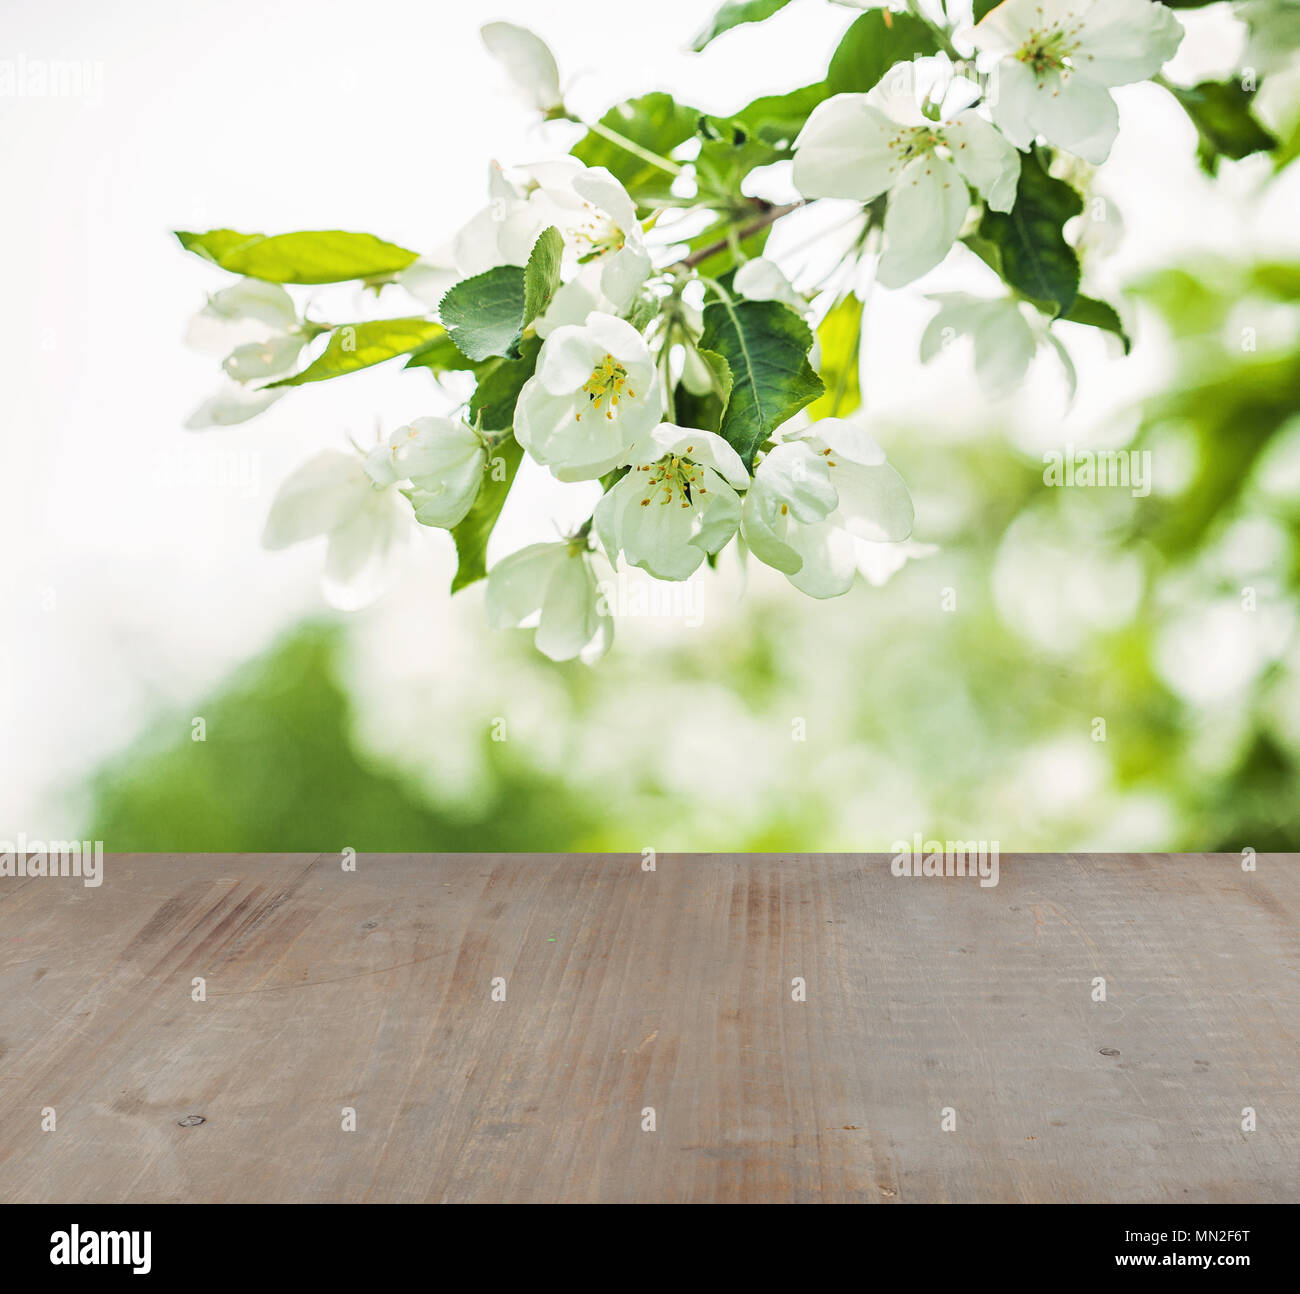 Messa a fuoco morbida dello sfondo con il verde delle foglie e fiori di primavera e grigio texture di legno Foto Stock